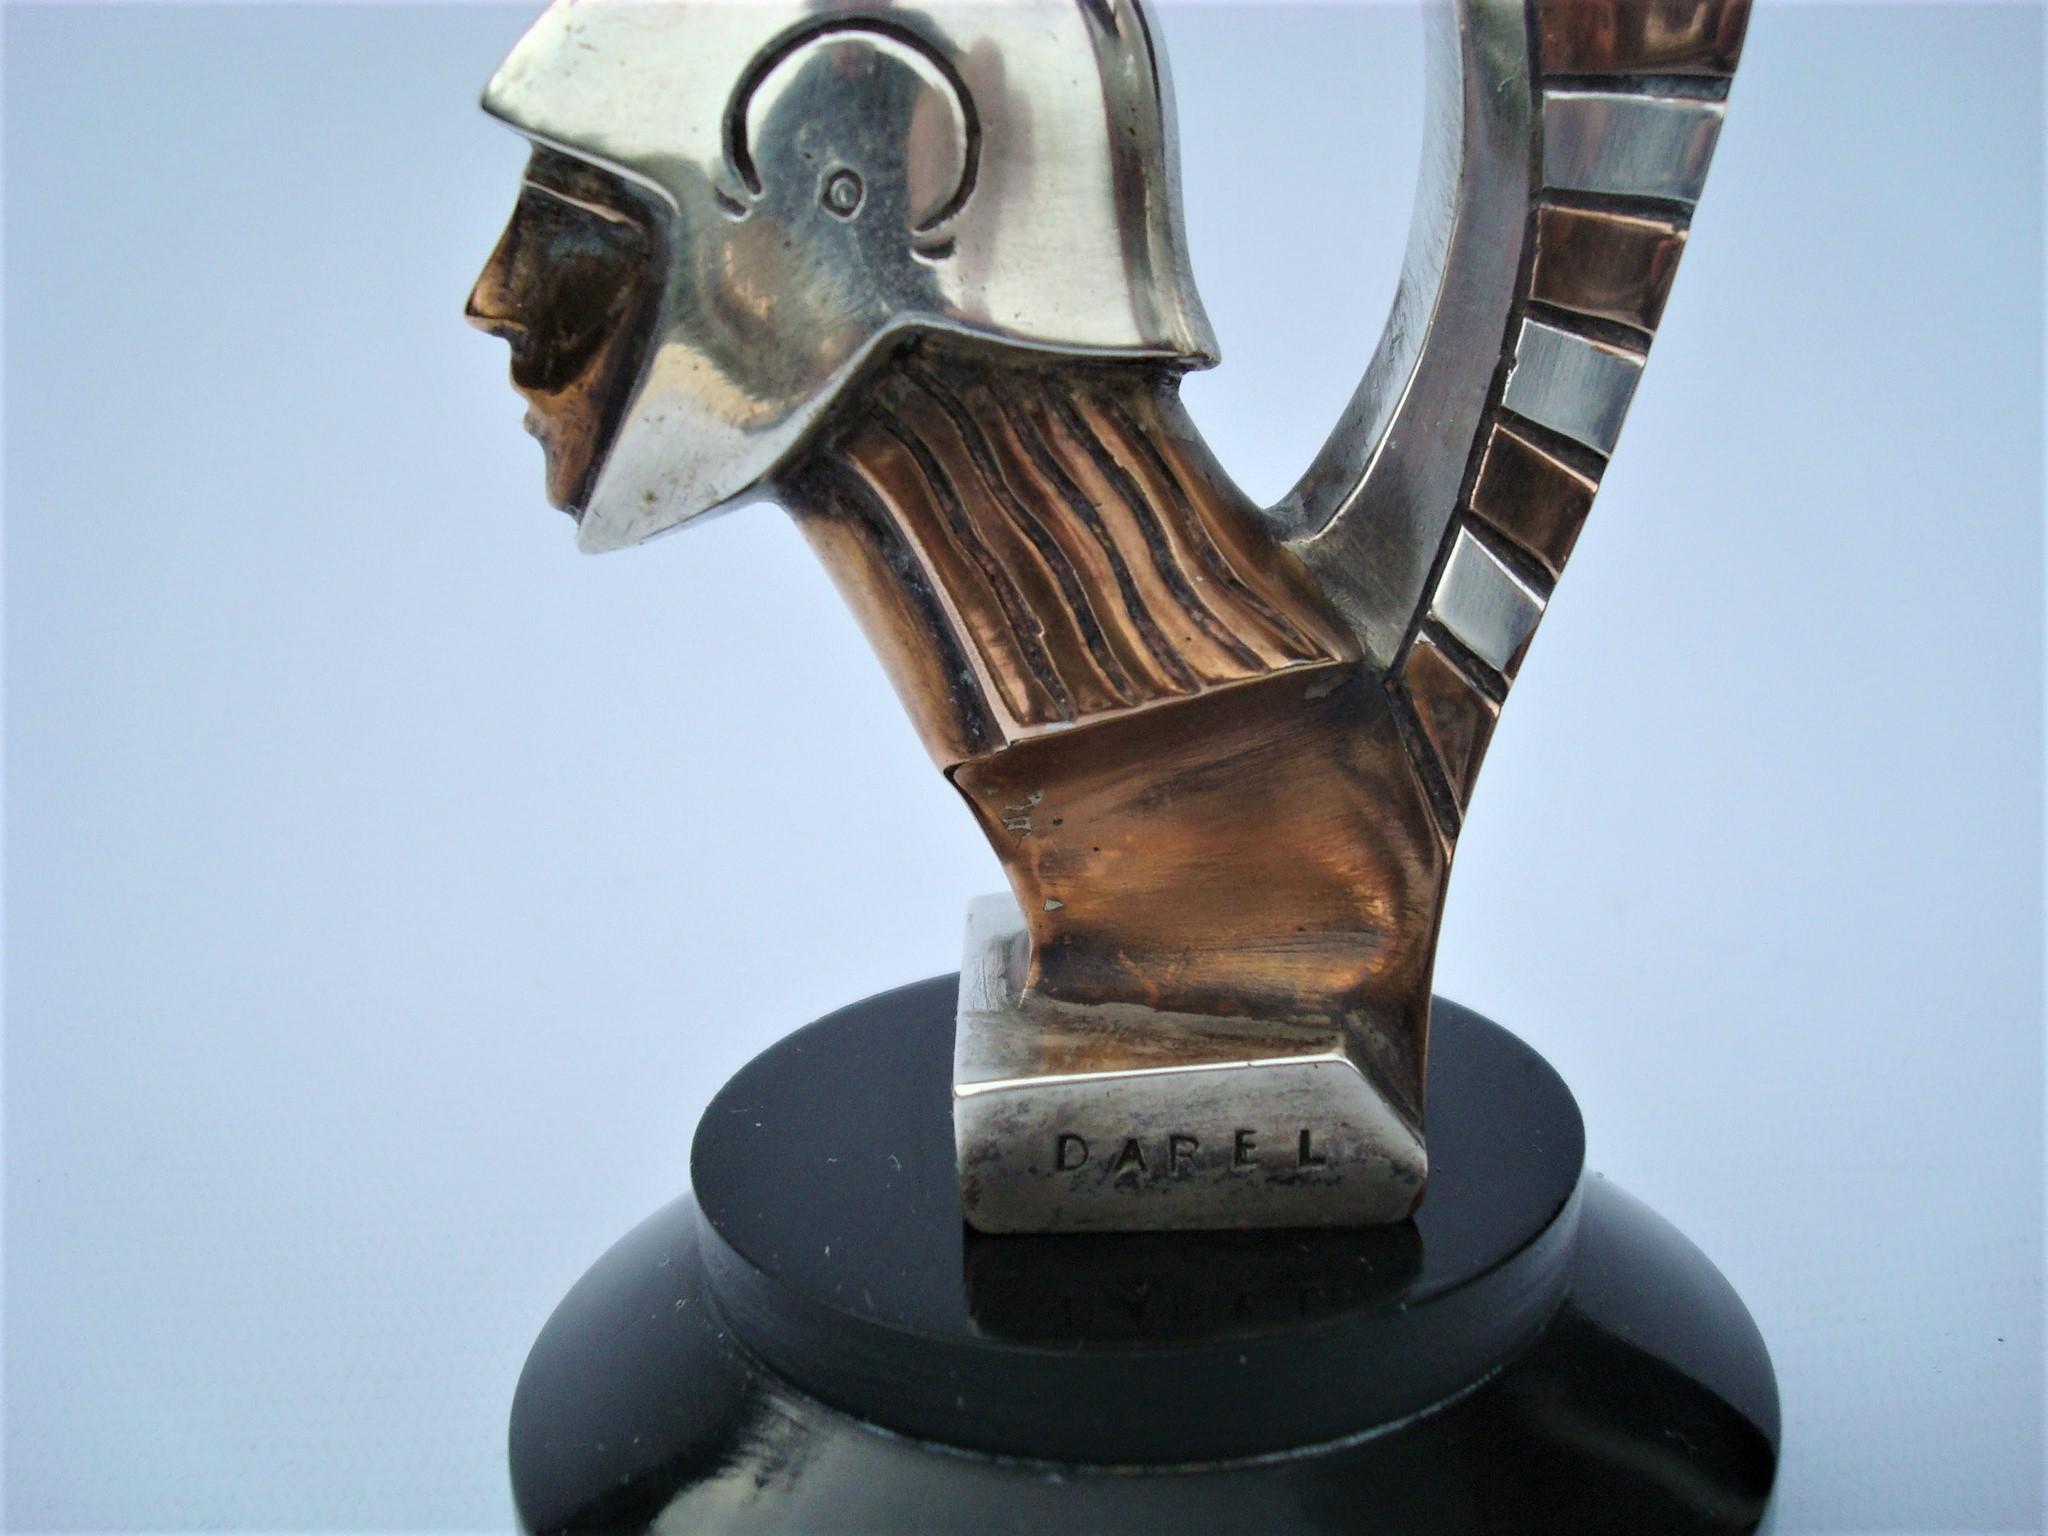 British Art Deco Roman Warrior Car Mascot, Hood Ornament by Darel, ca. 1920s